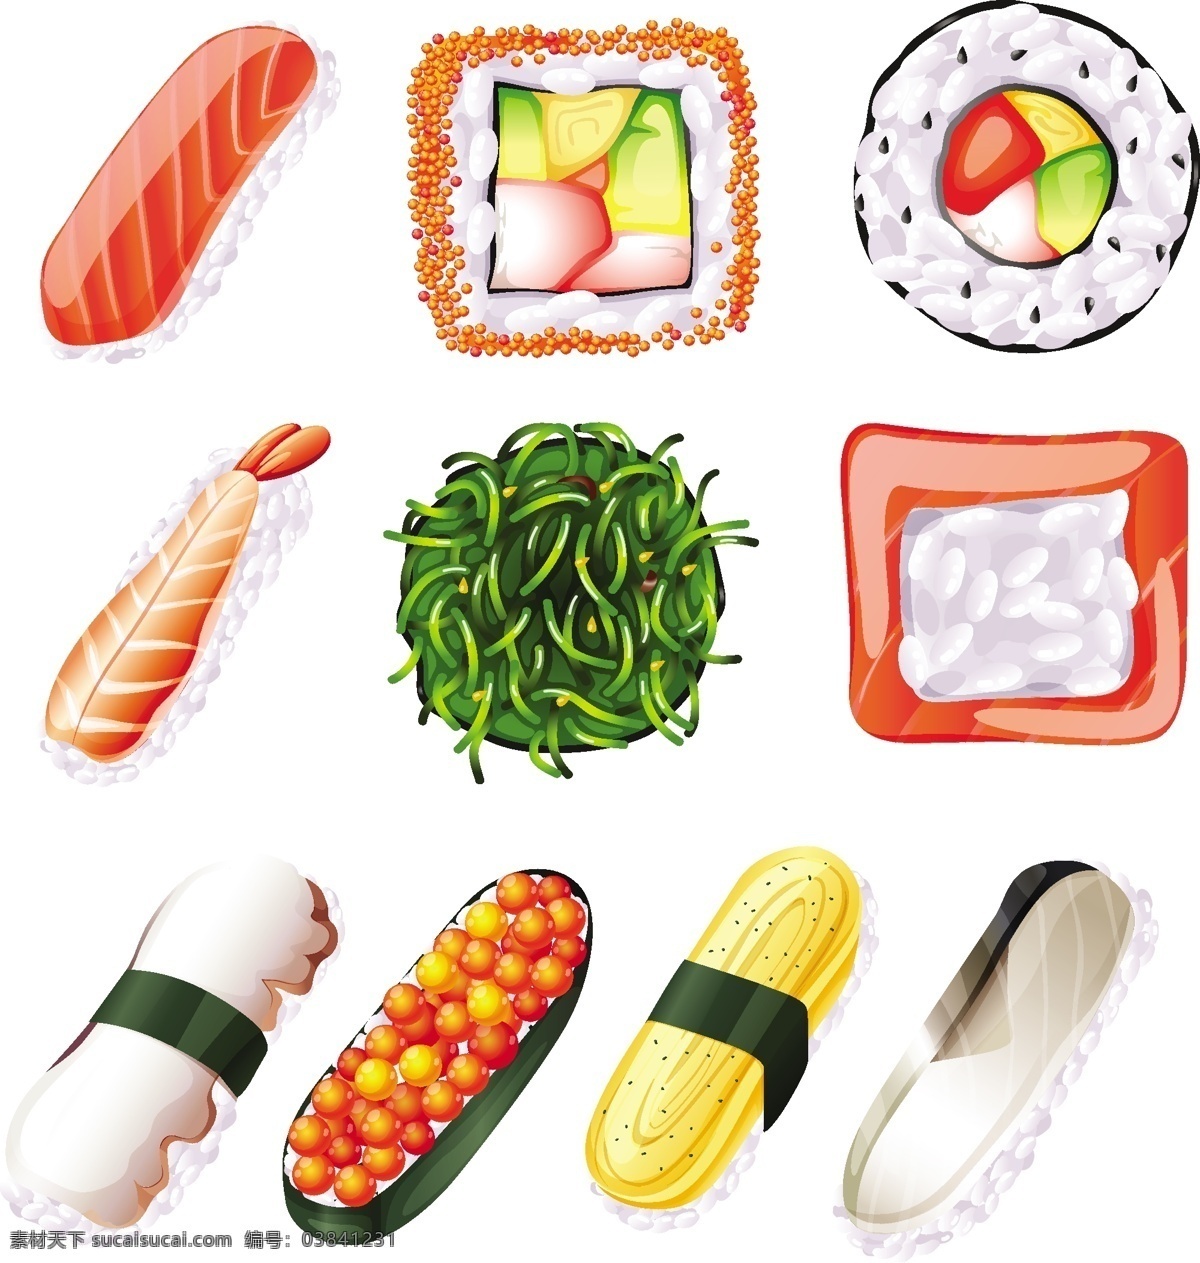 白色 背景 下 套 寿司 食物 鱼 蔬菜 绘画 肉类 插图